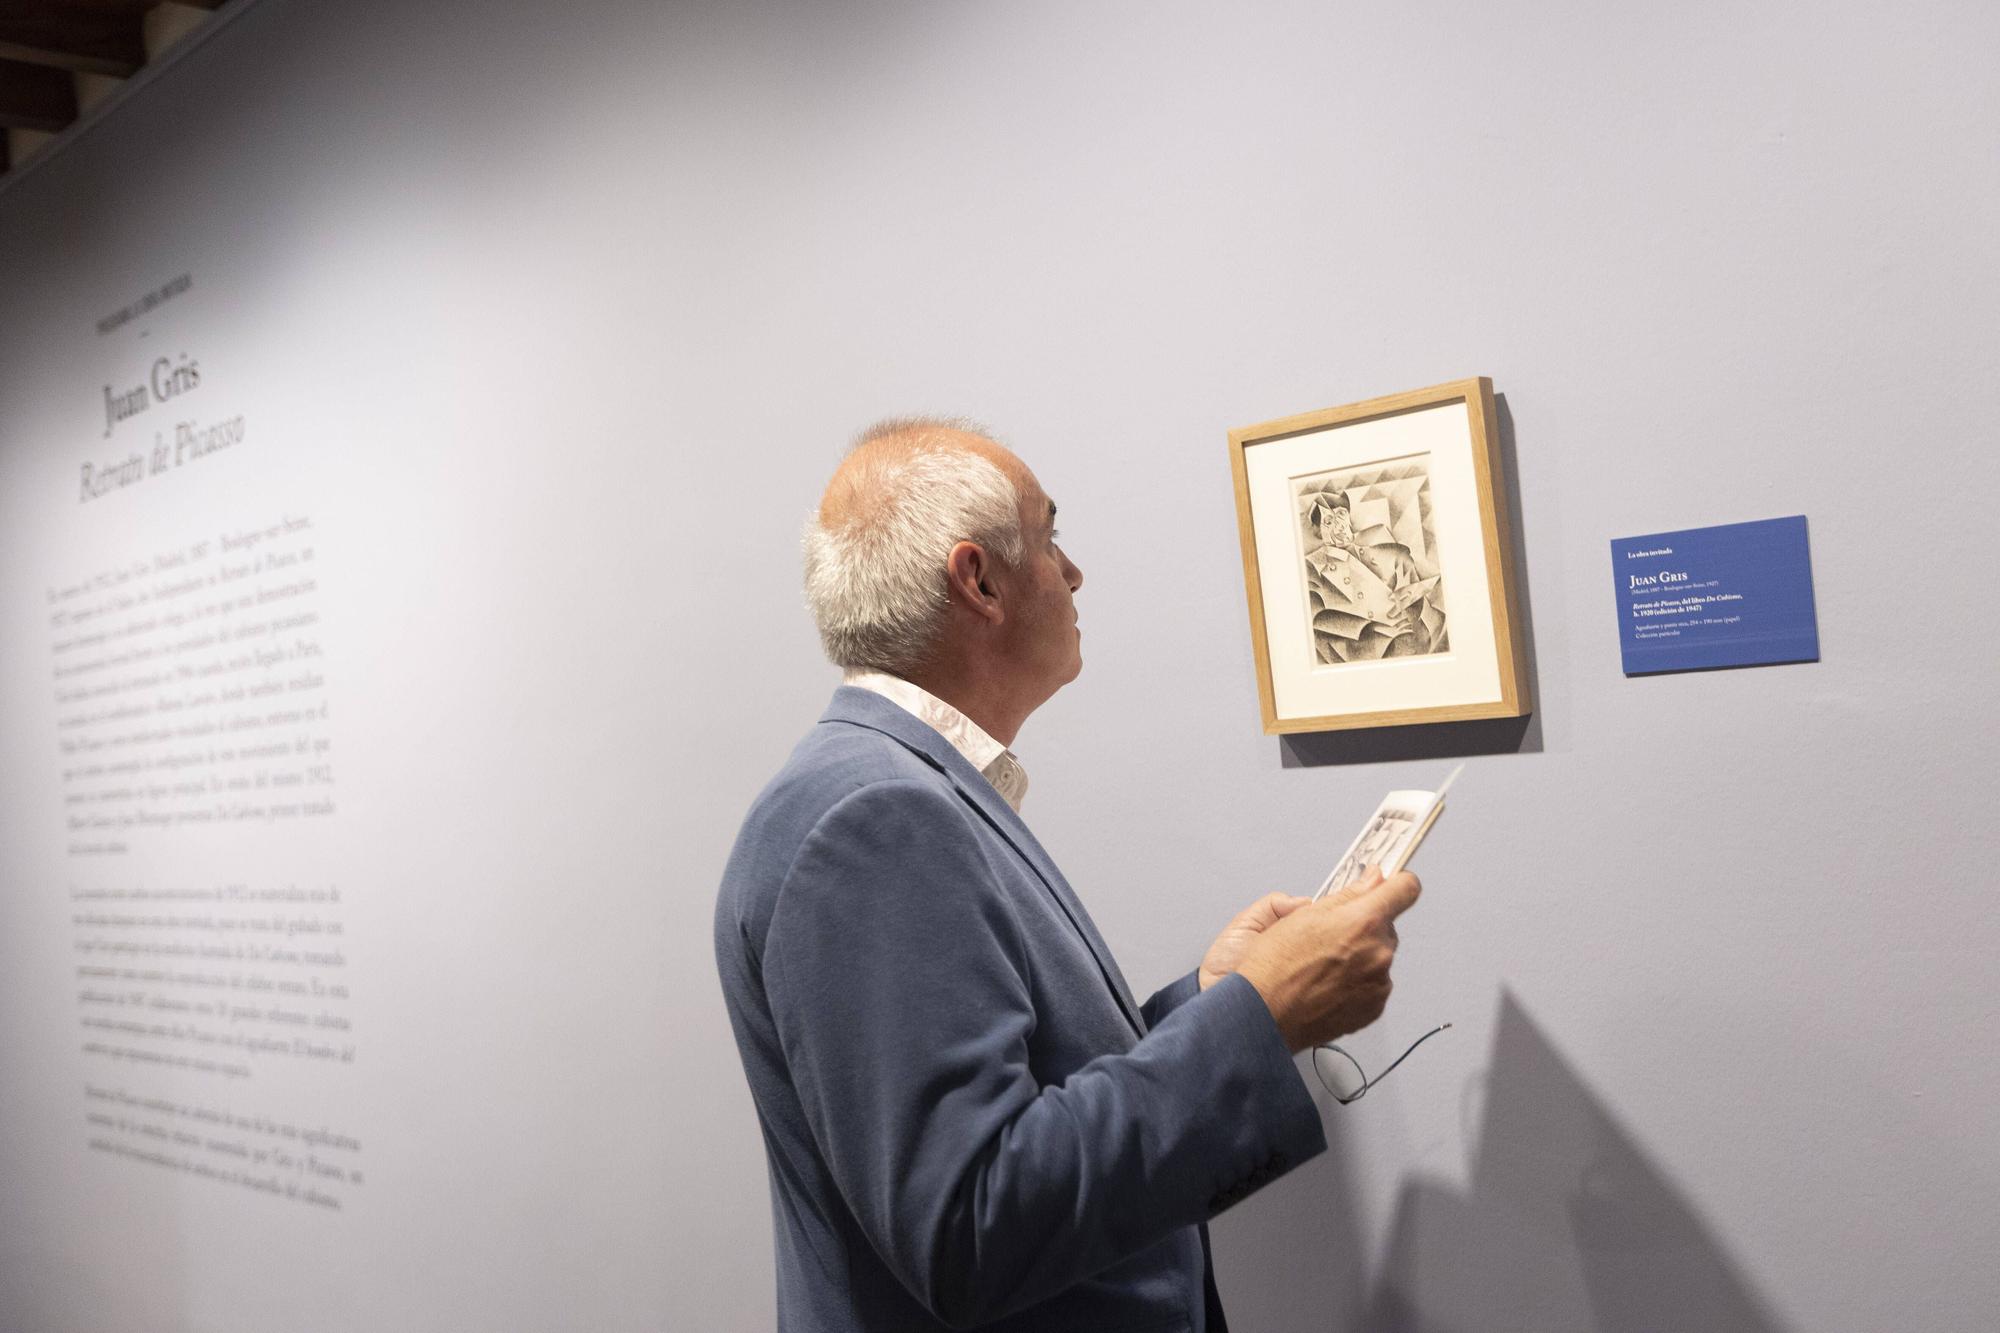 En imágenes: El Bellas Artes estrena una exposición de estampas de Picasso